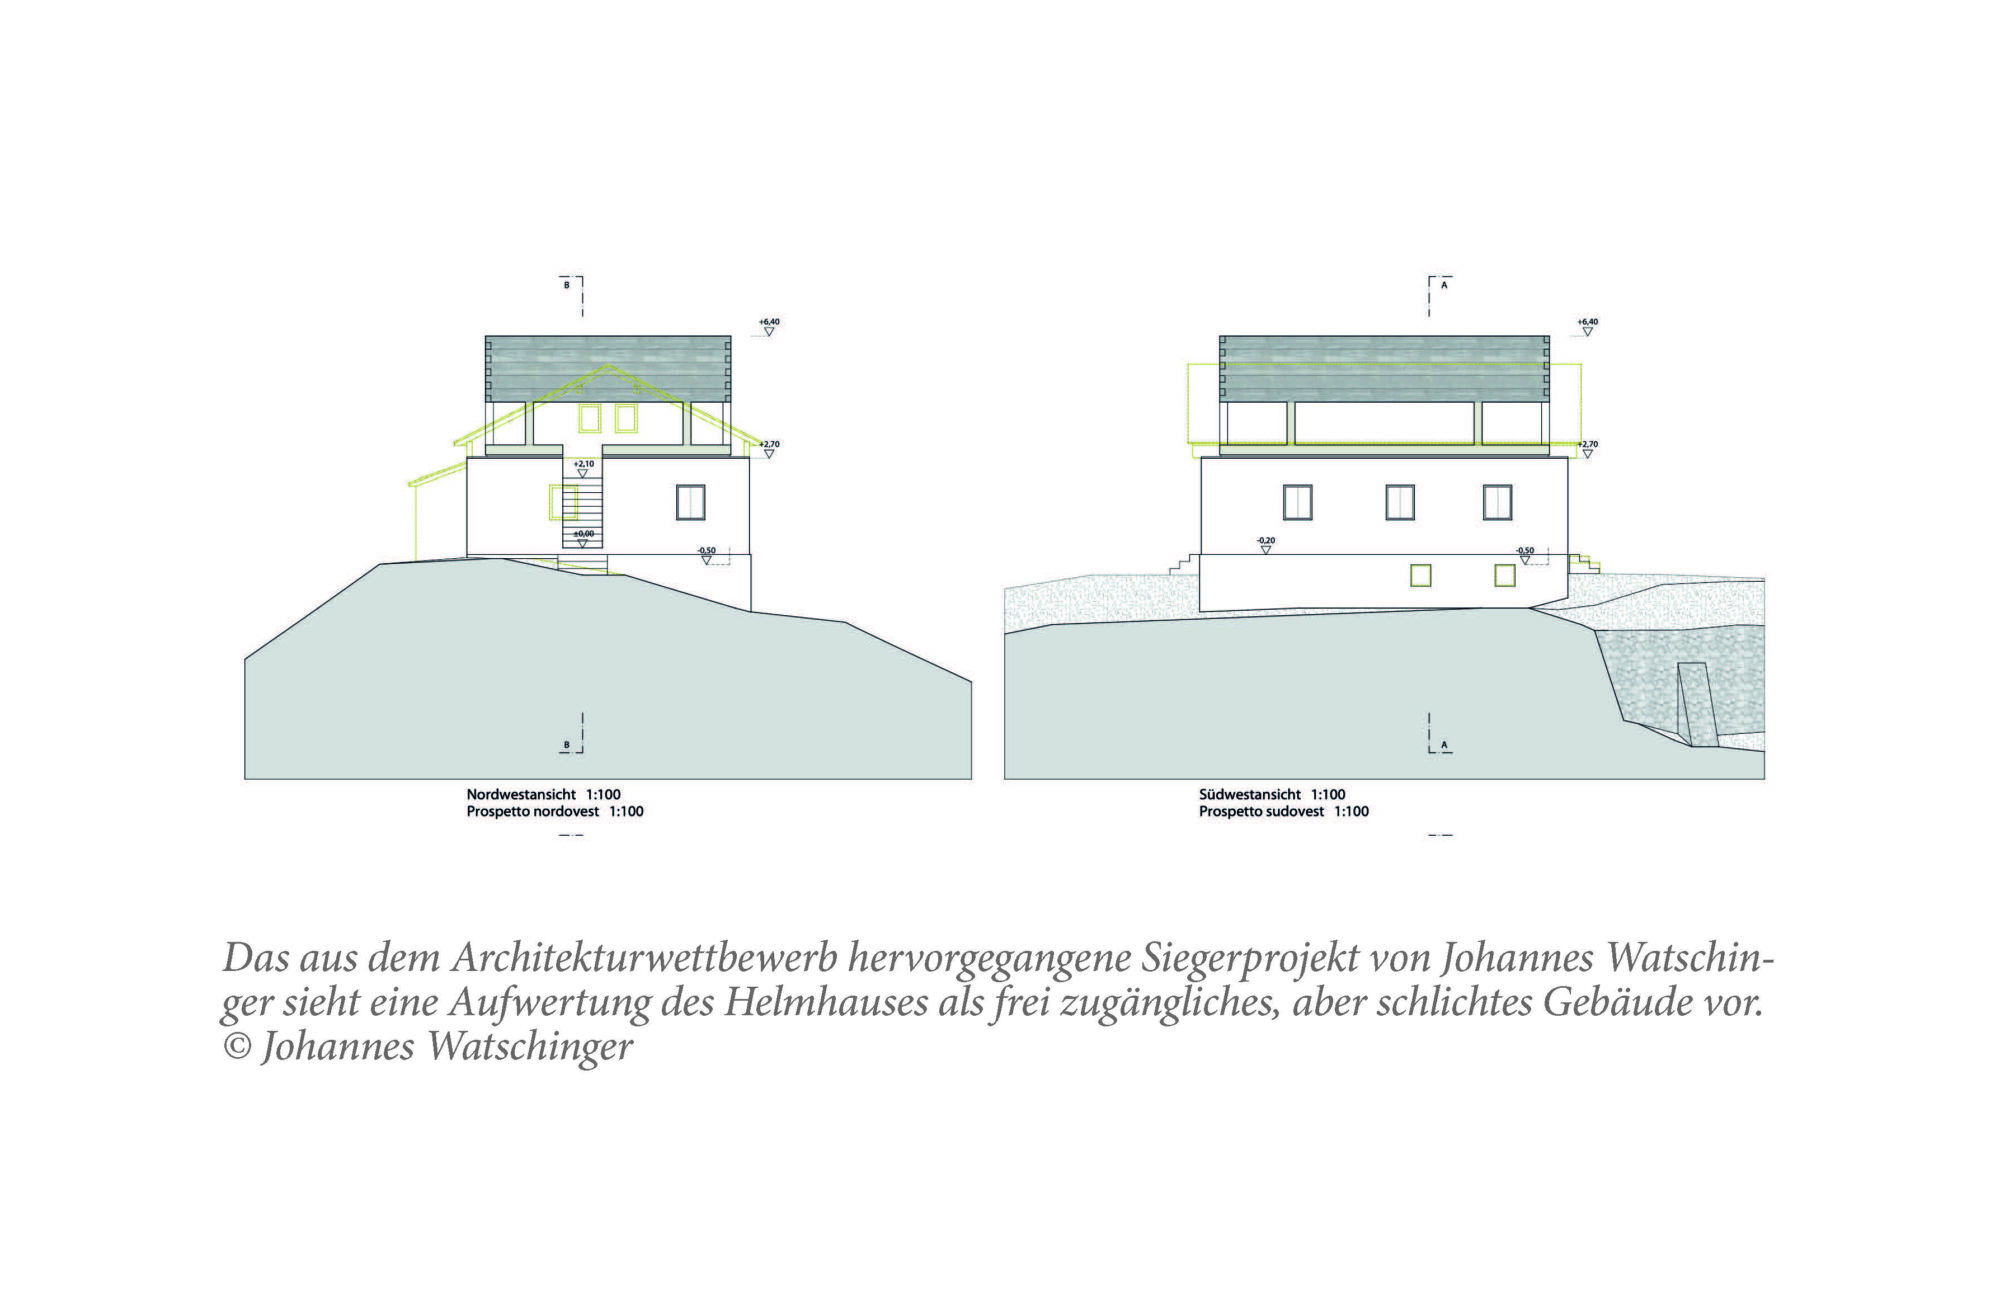 Projekt offenes Helmhaus lt. Planung Arch. Johannes Watschinger